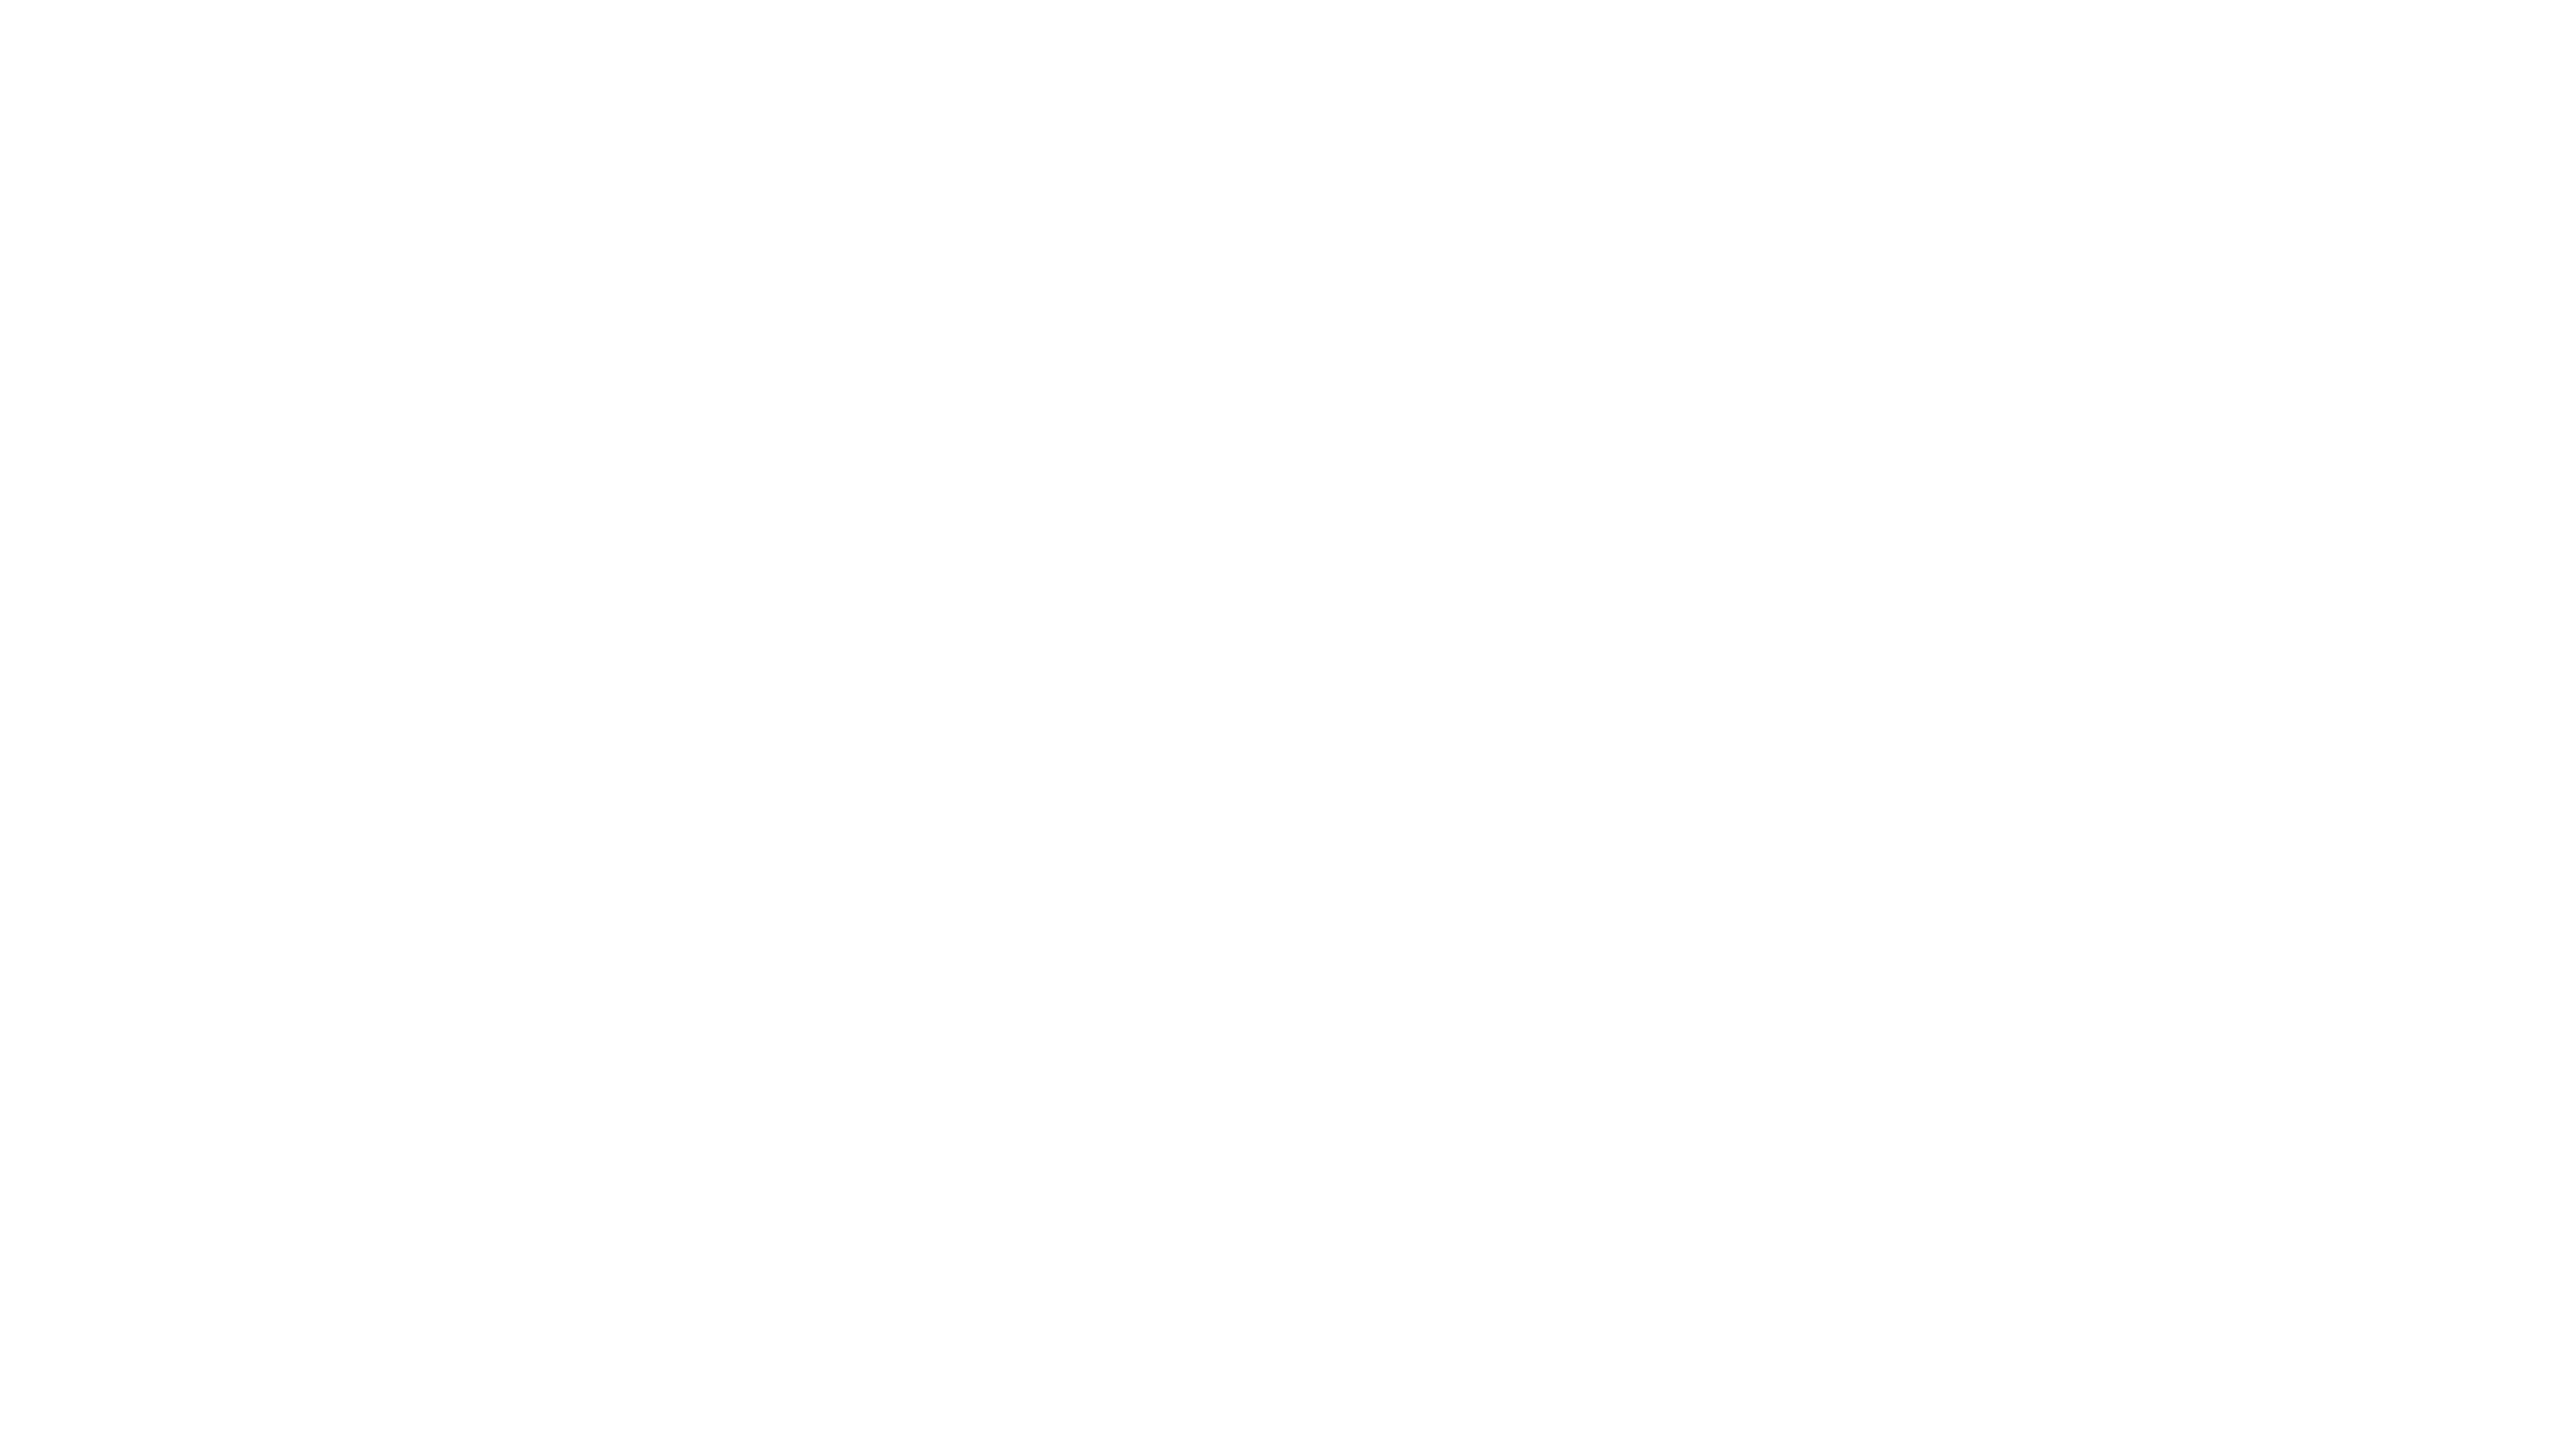 MEBO